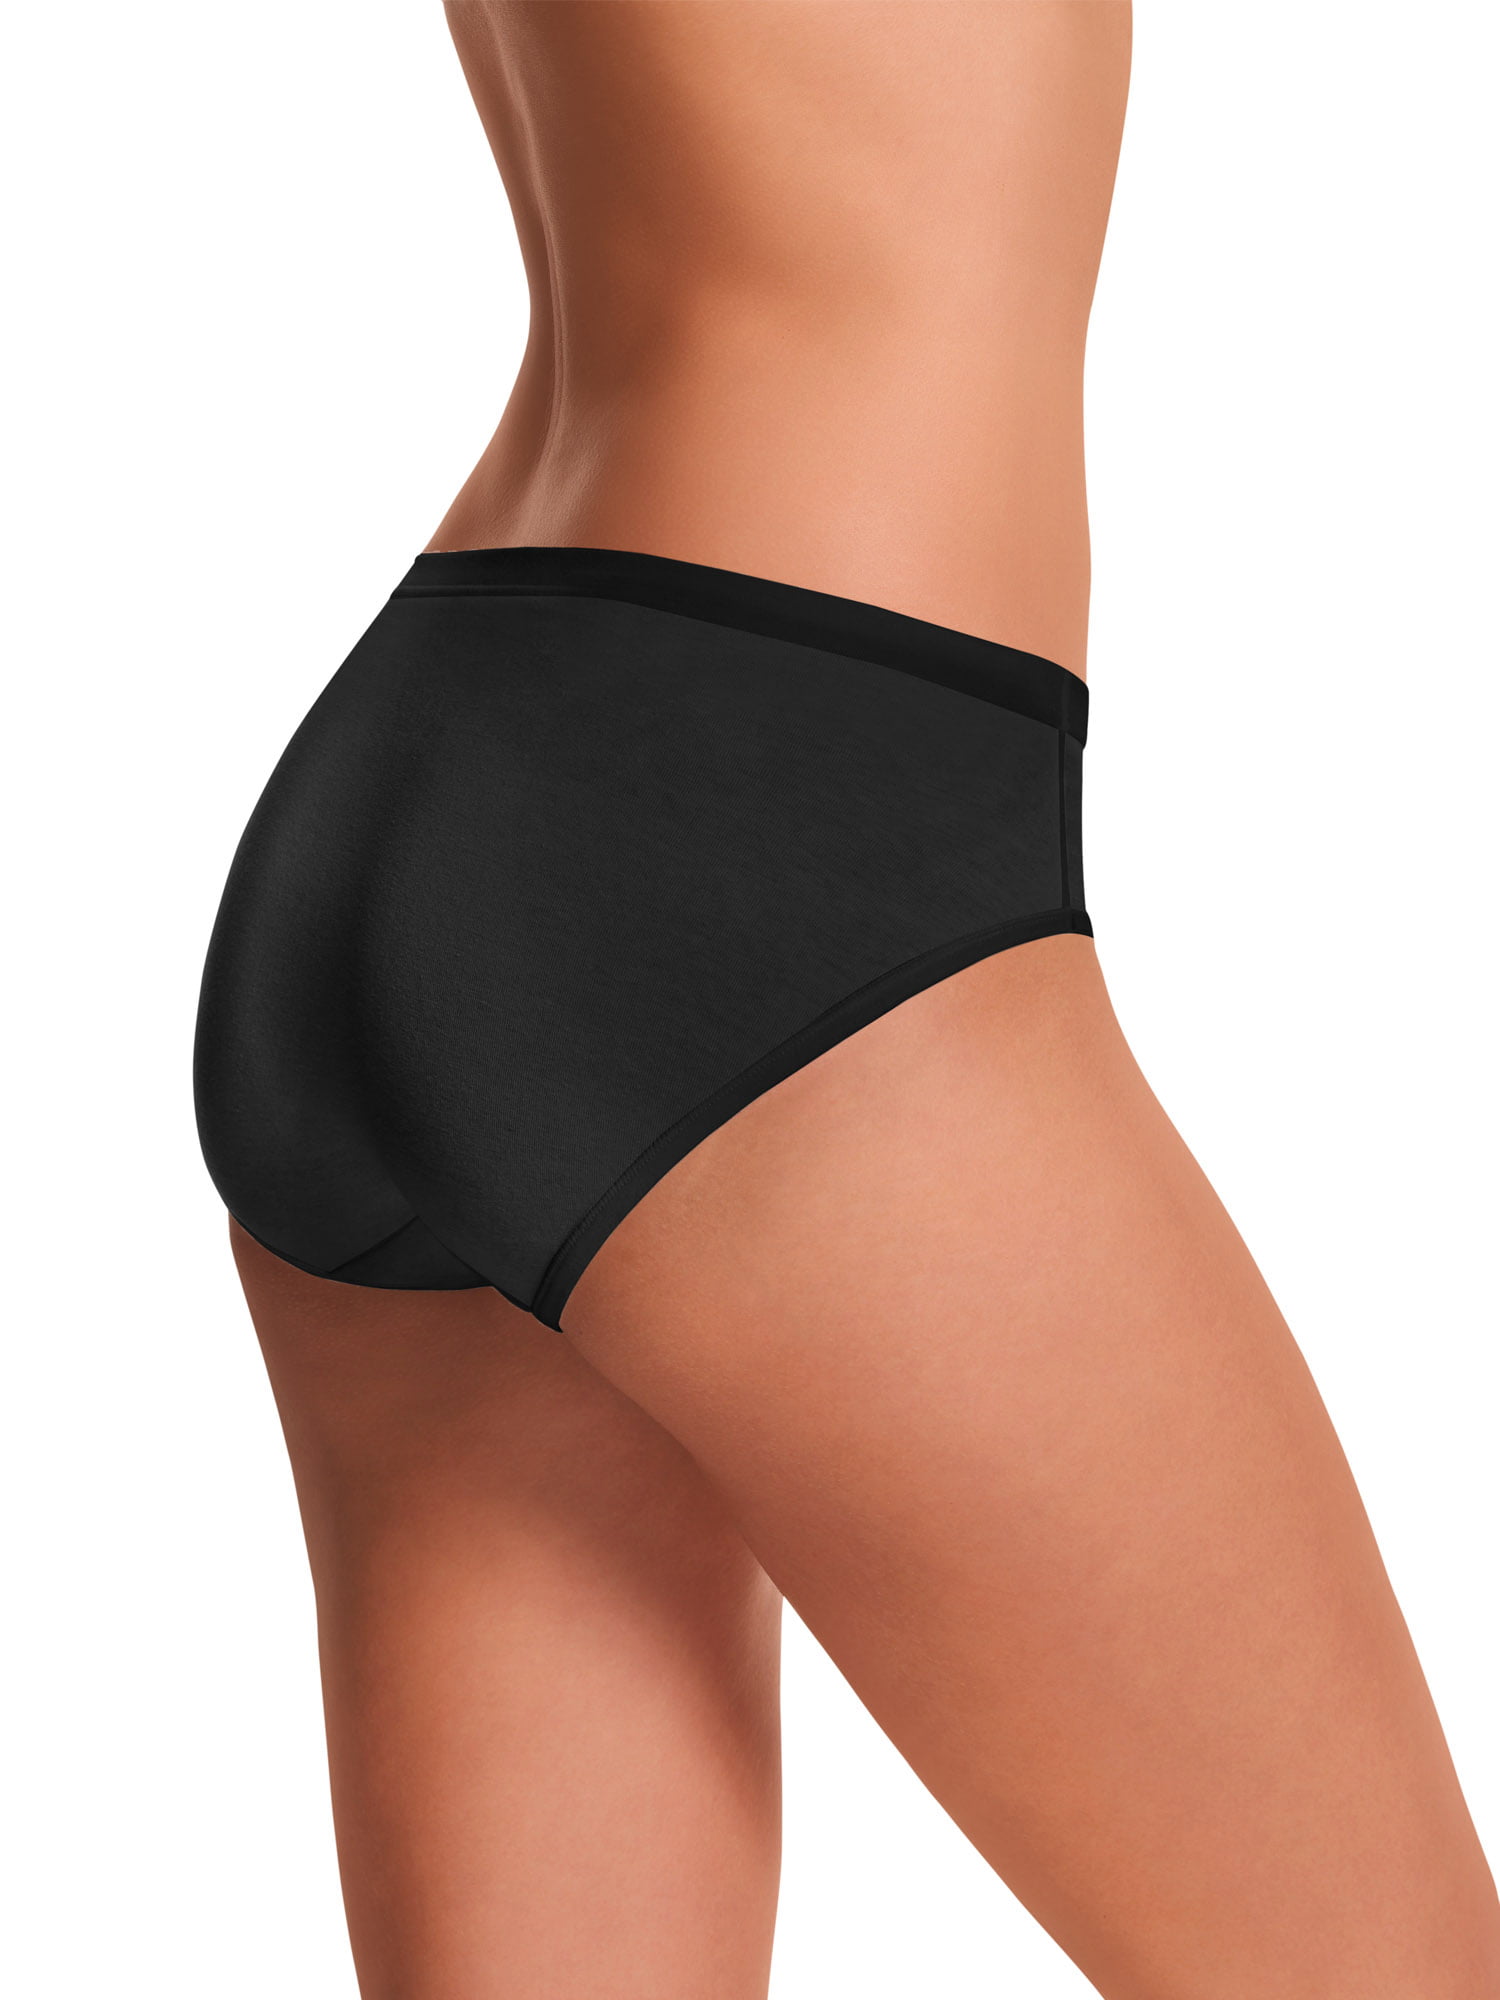 Hanes Women's Low Rise Comfort Soft Waistband Brief Underwear, 6-Pack 